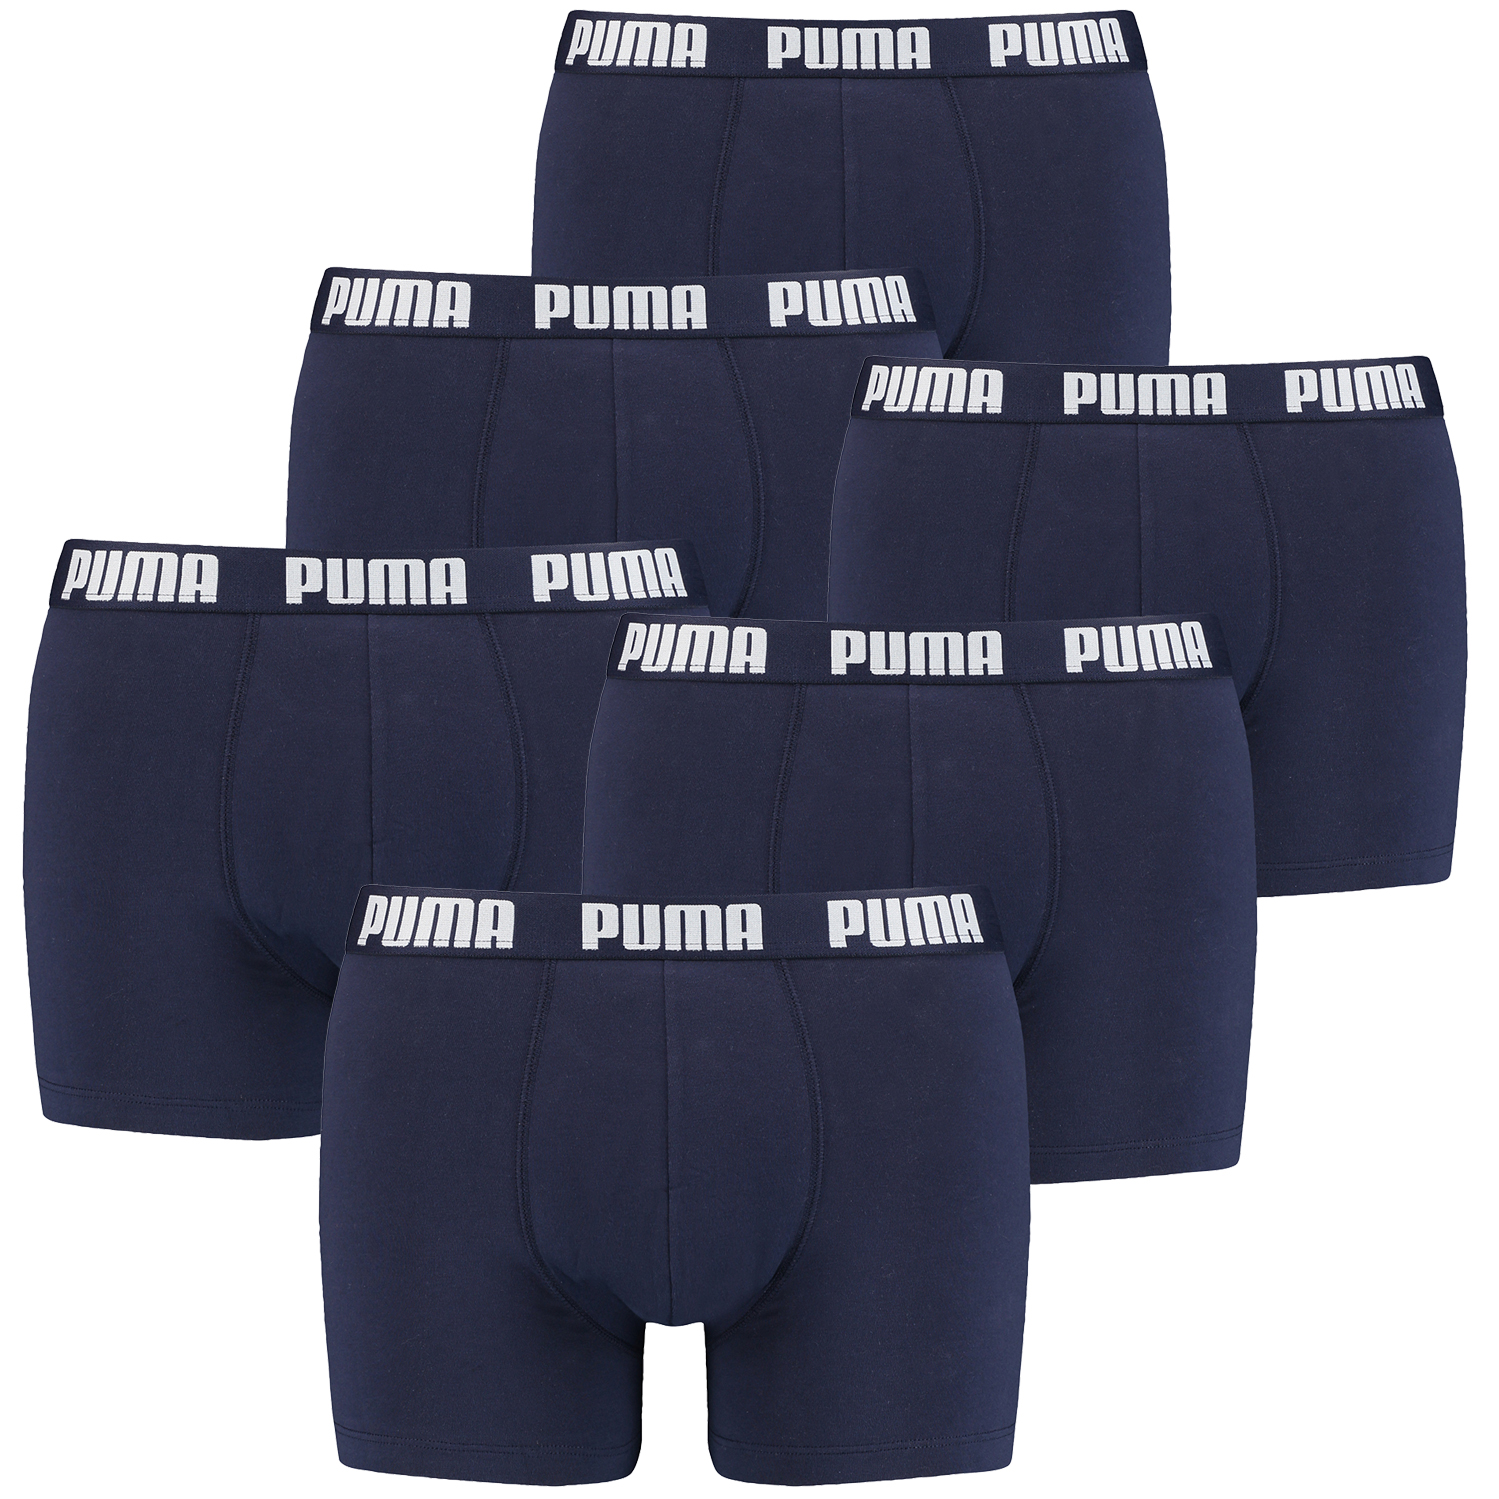 Puma Boxer Briefs Boxershorts Men Herren Everyday Unterhose Pant Unterwäsche 6 er Pack 